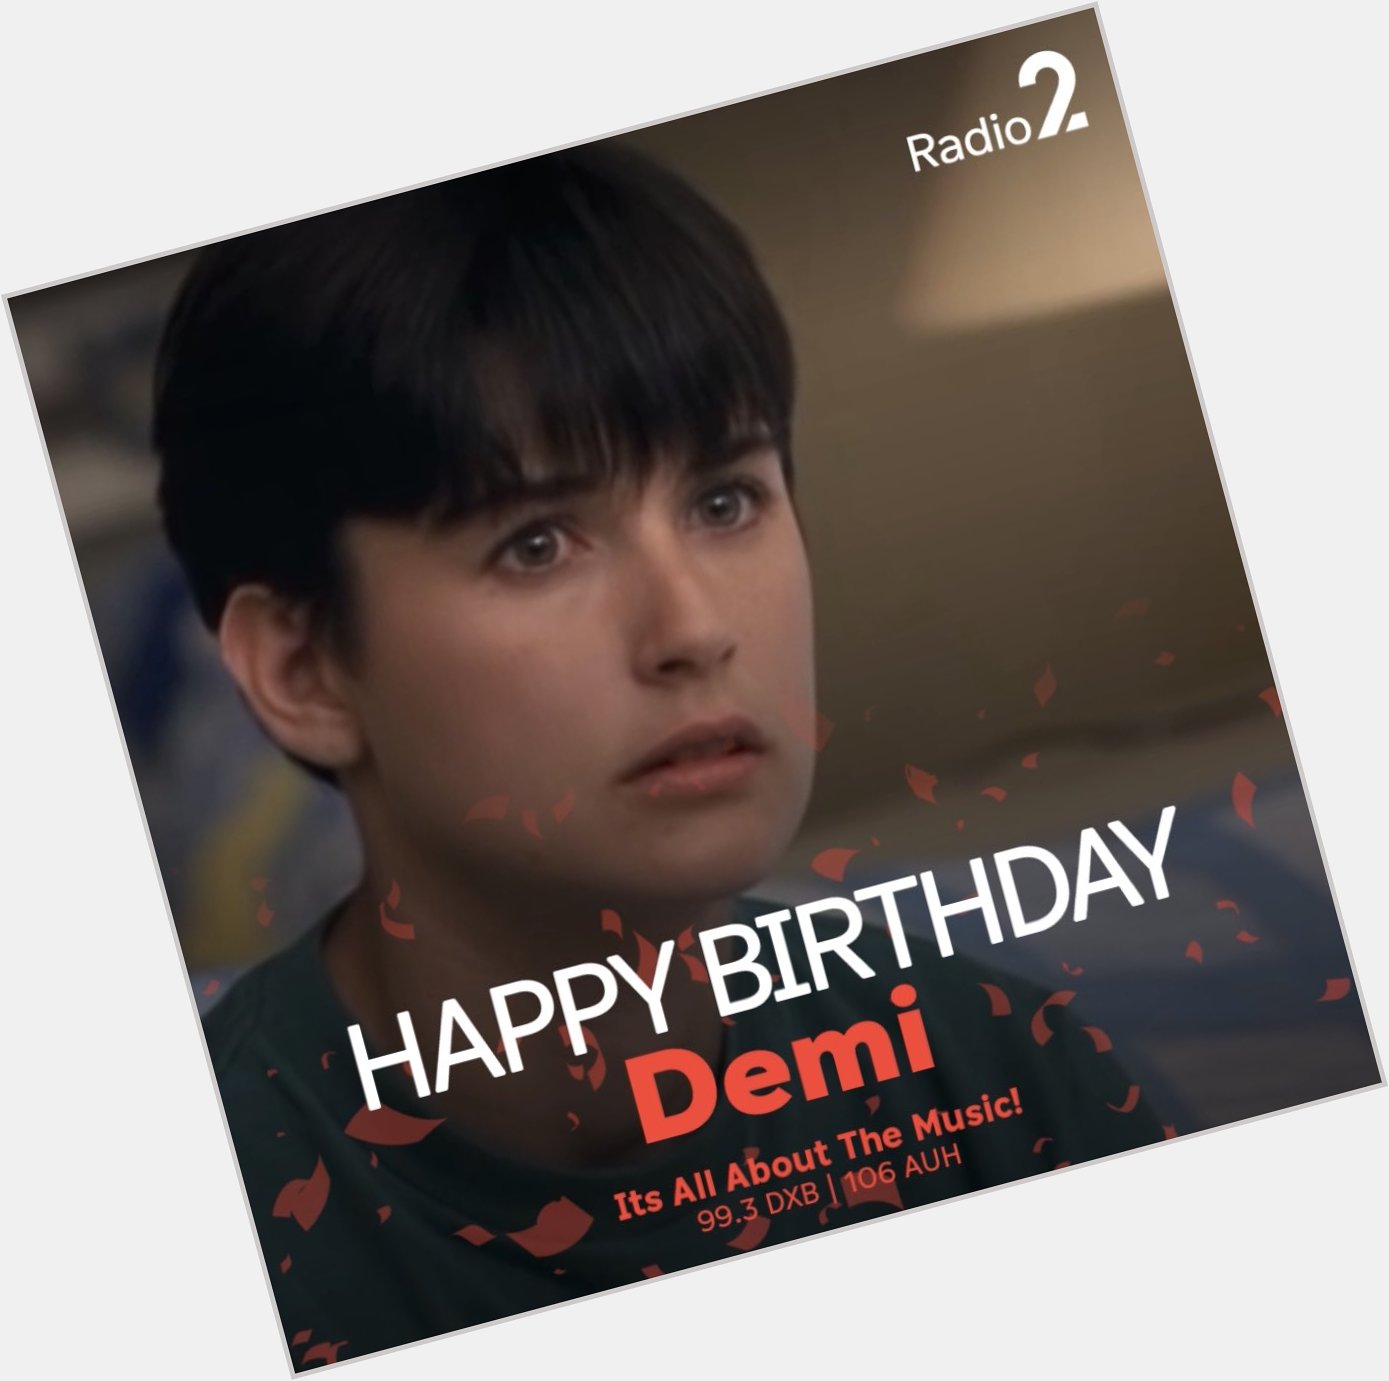 Happy Birthday Demi Moore. 
.
.
.   